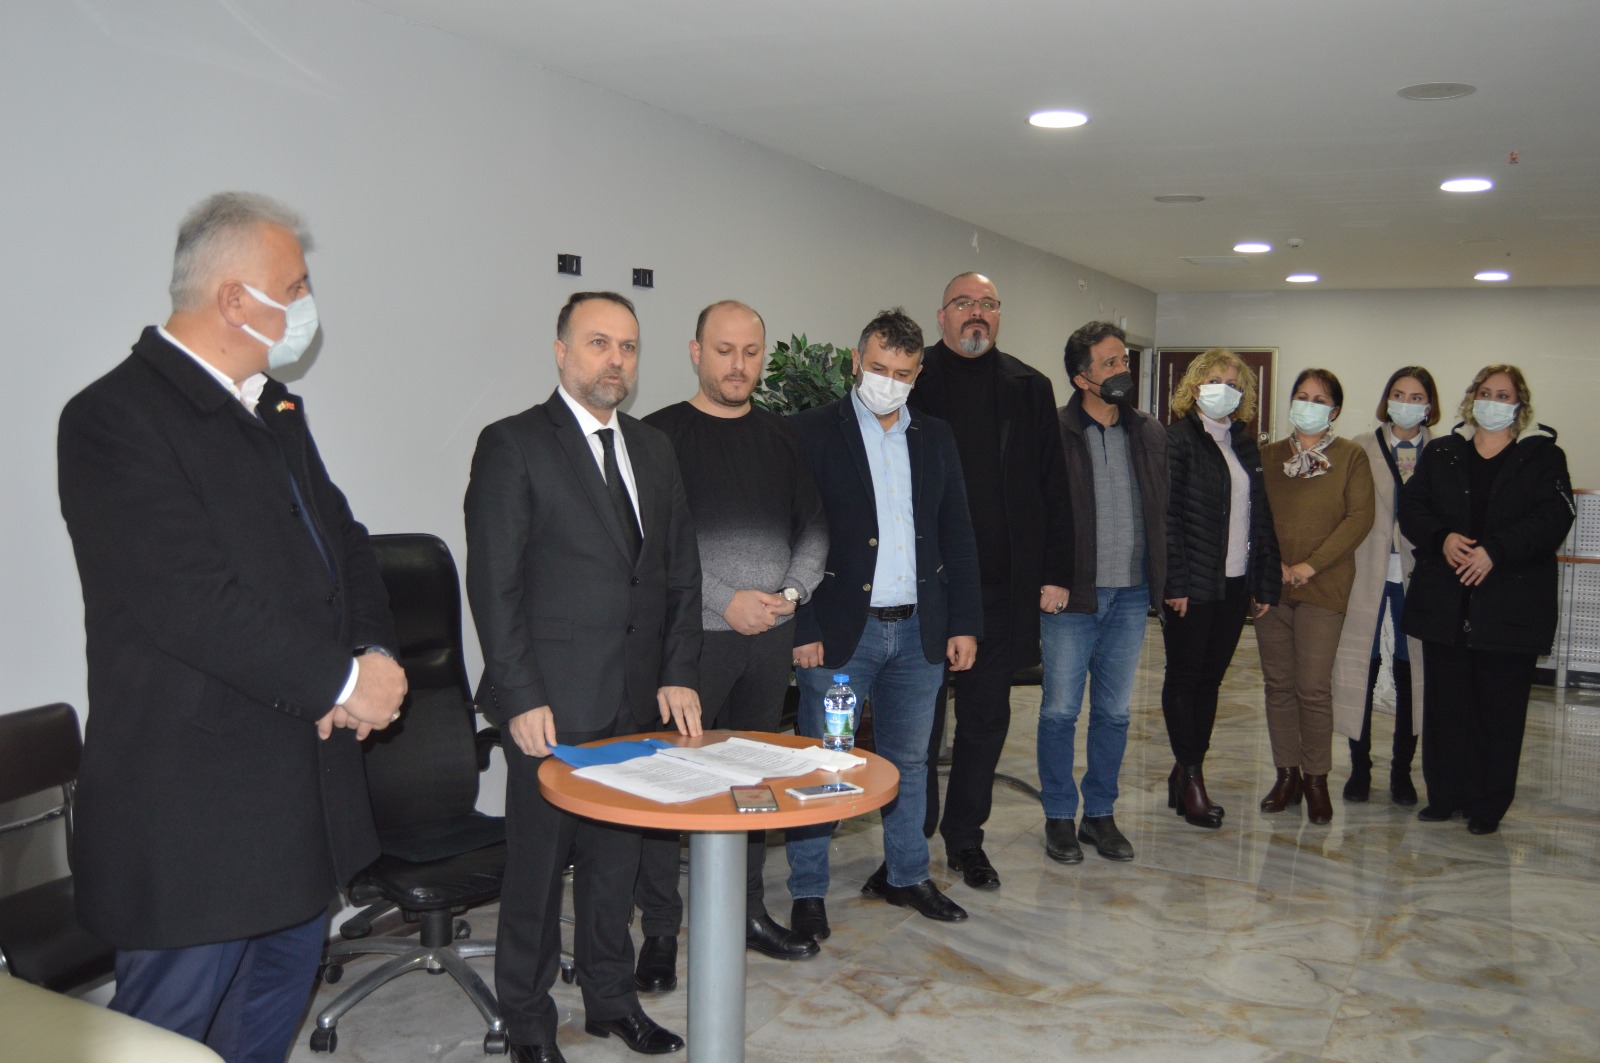 İYİ Parti Zonguldak ve Ereğli yönetiminden 17 kişi istifa etti